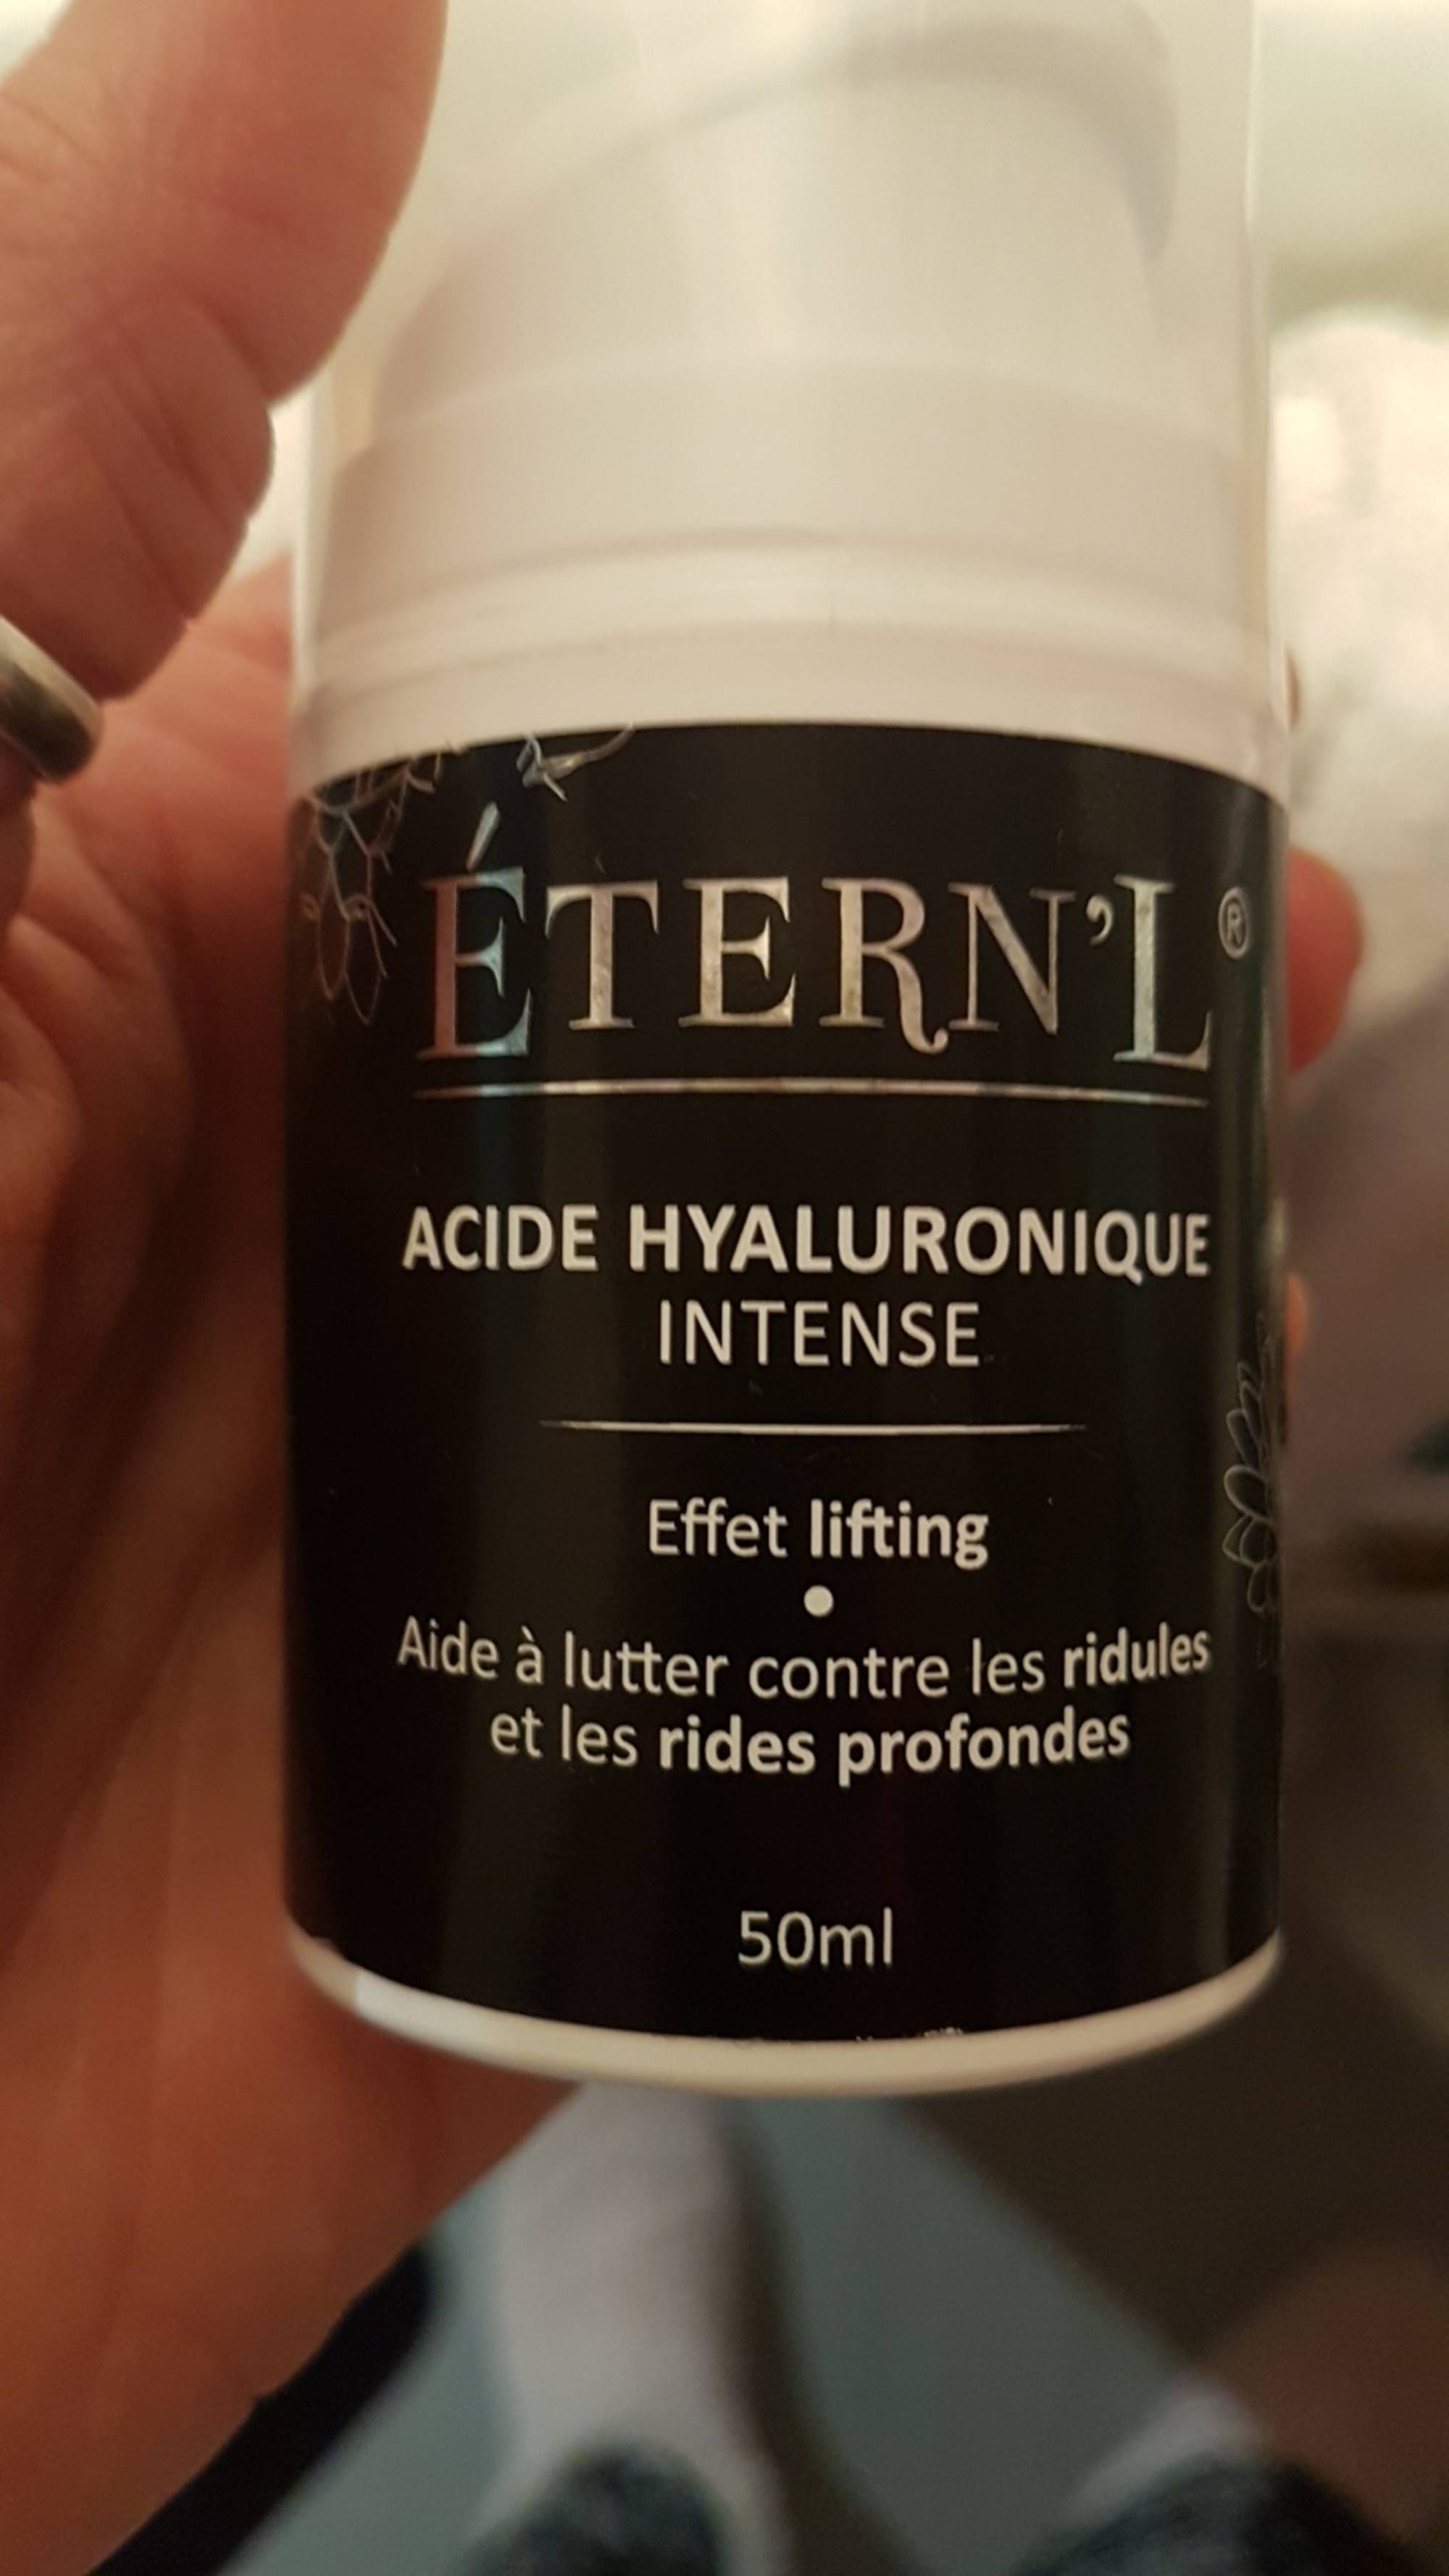 ÉTERN'L - Acide hyaluronique intense - Aide à lutter contre les les ridules et les rides profondes